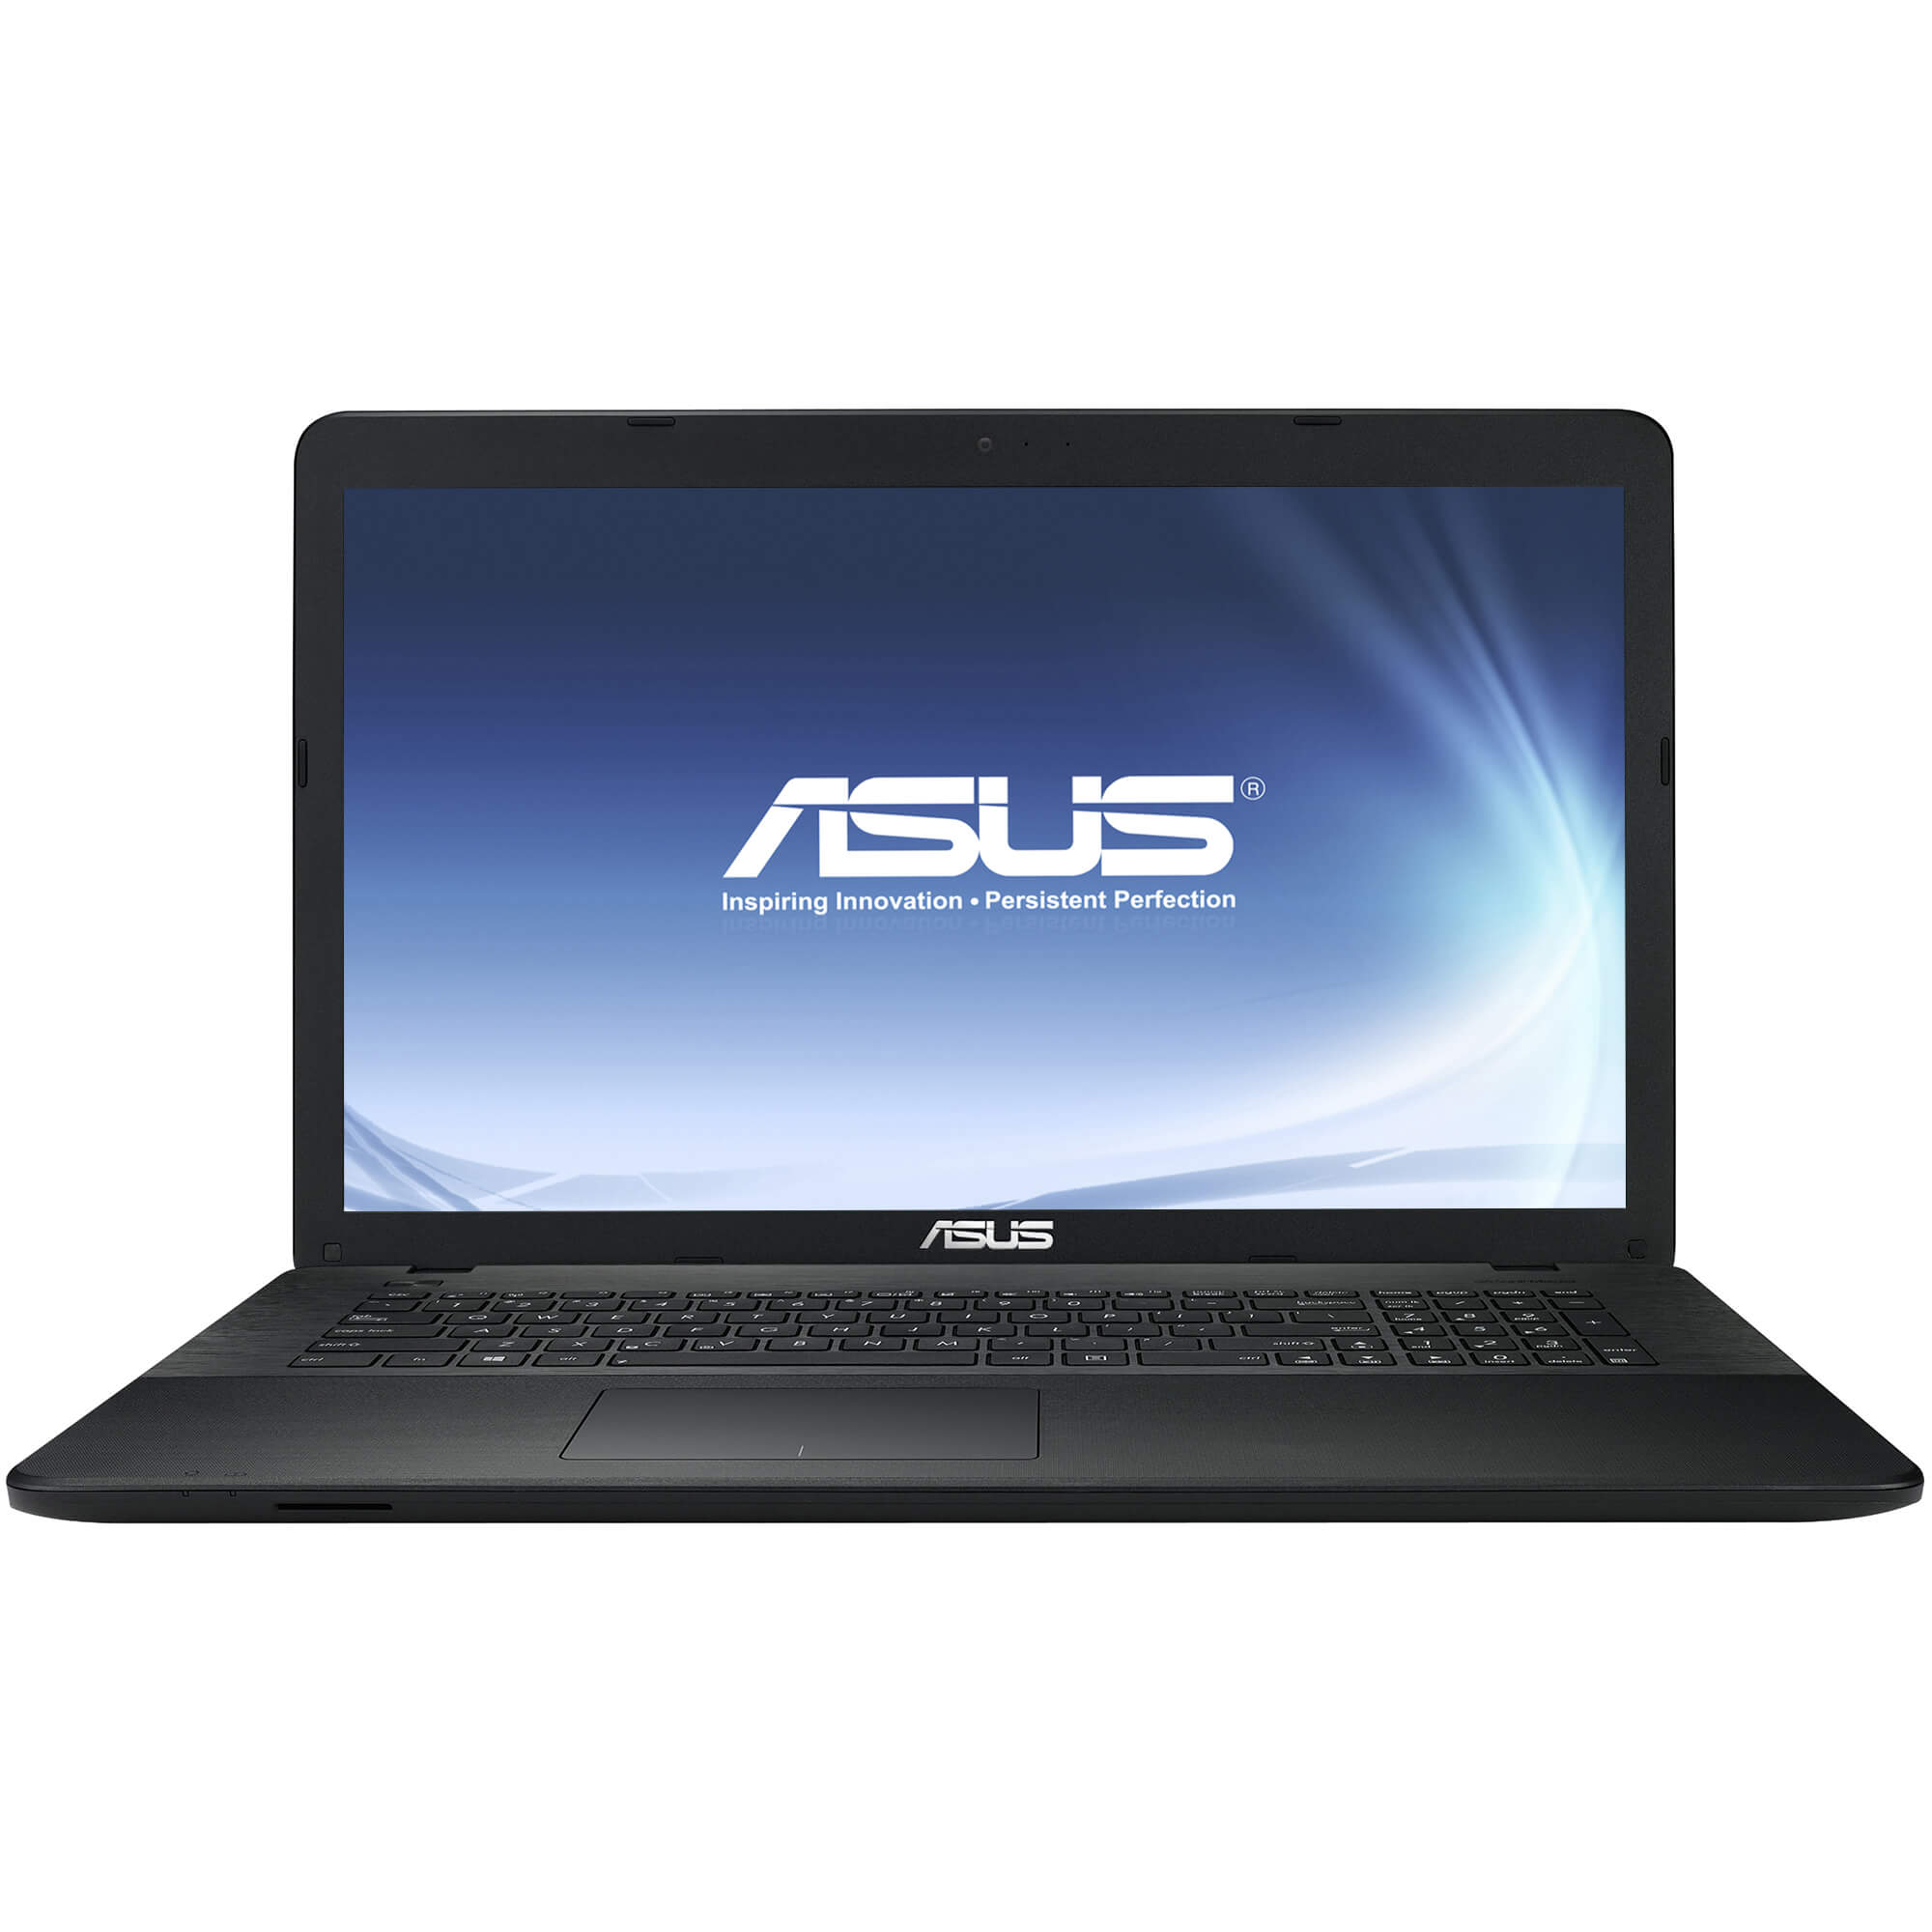  Laptop Asus X751LN-TY109D, Intel Core i3-4030U, 8GB DDR3, HDD 1TB, nVidia GeForce 840M 2GB, Free DOS 